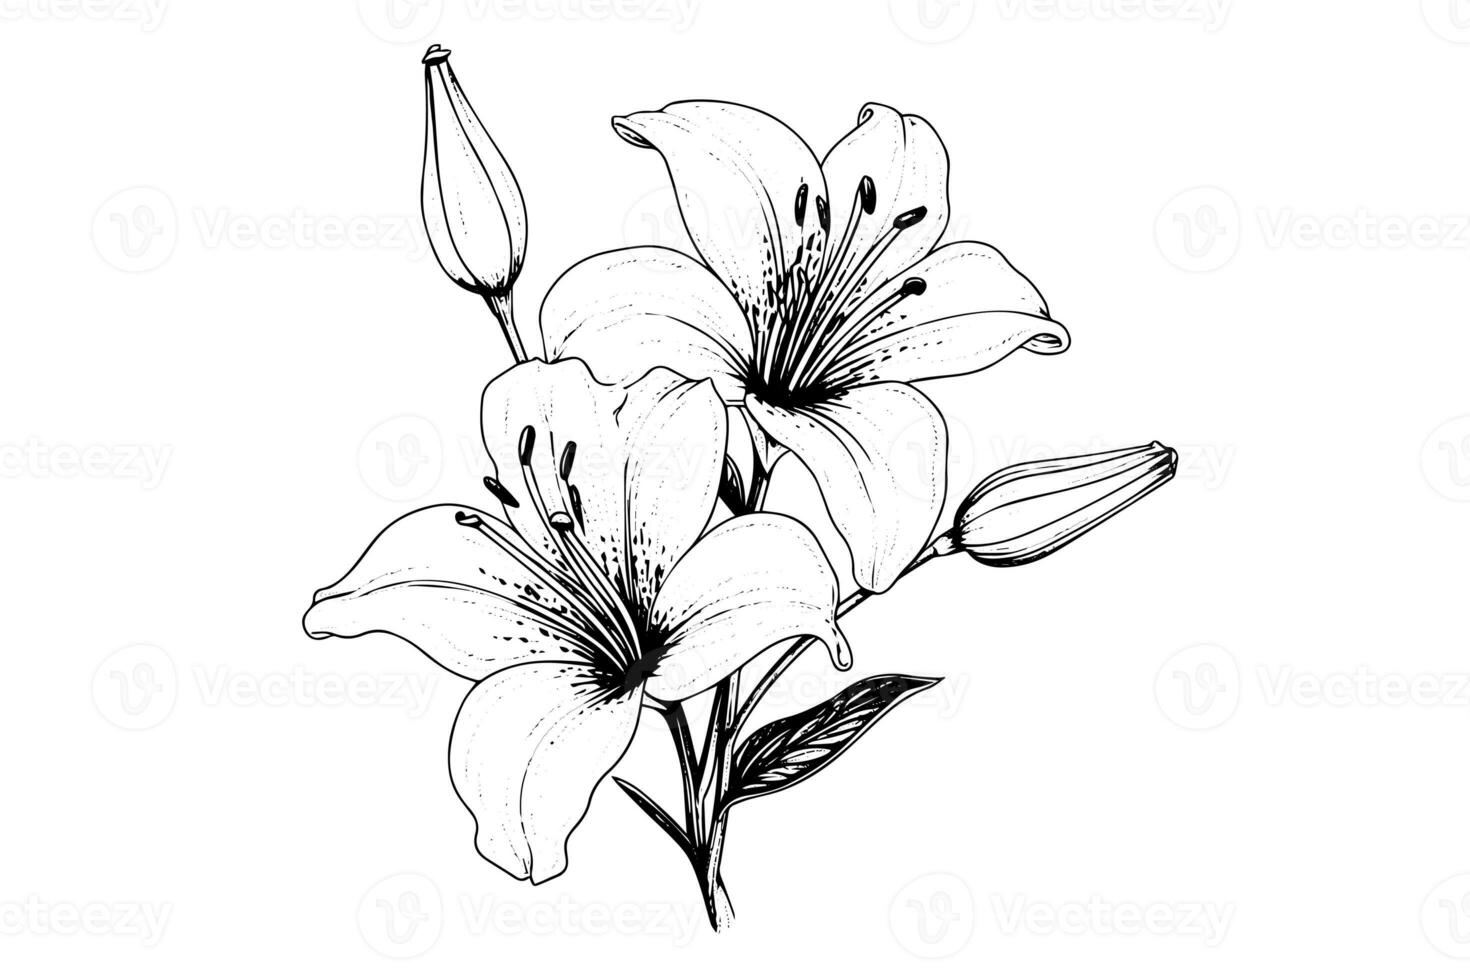 svartvit svart och vit bukett lilja isolerat på vit bakgrund. ritad för hand vektor illsutration. foto